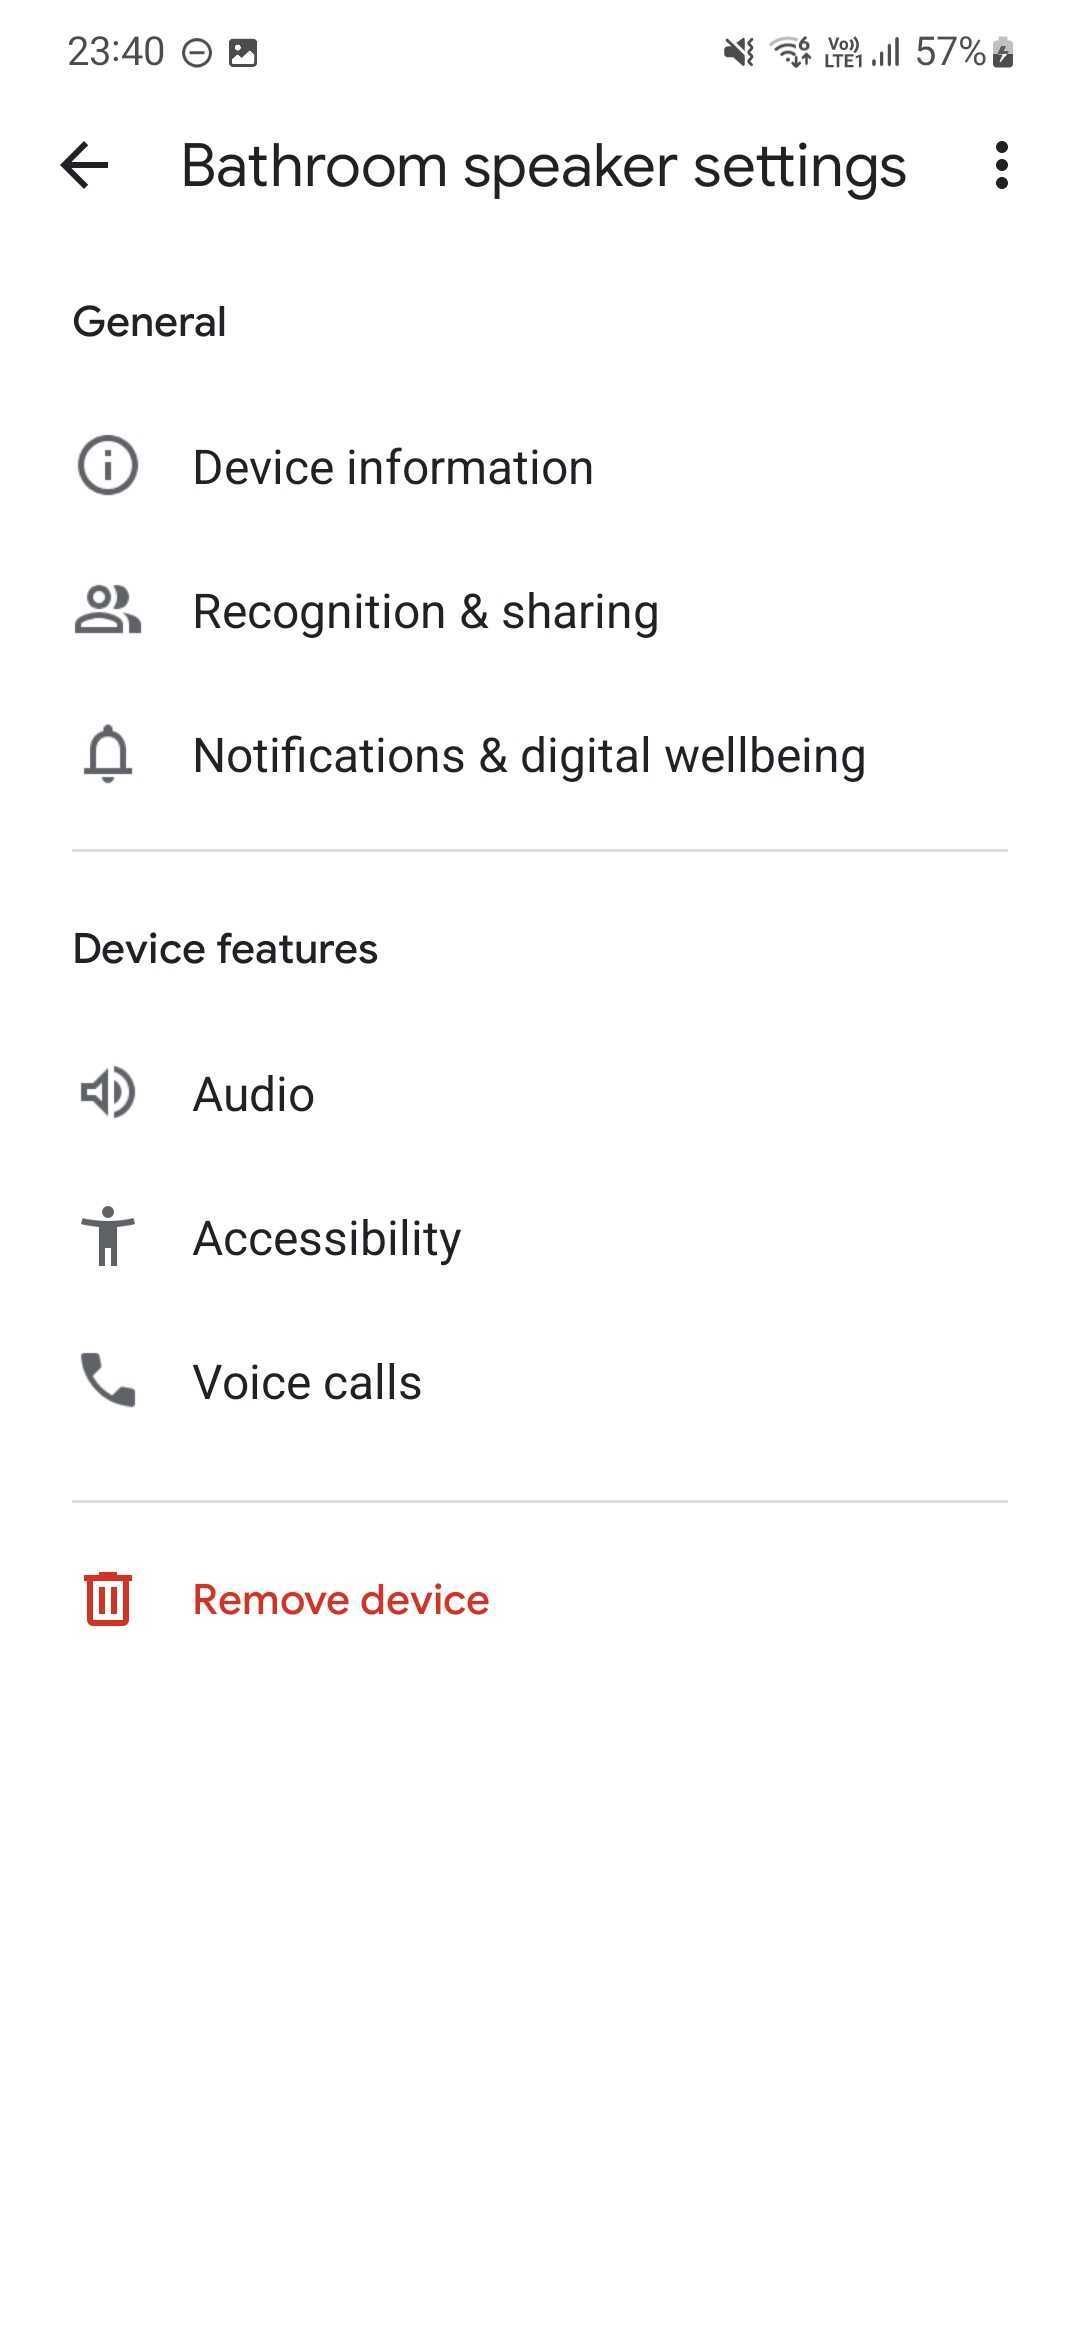 As configurações do app Google Home para um alto-falante de banheiro.